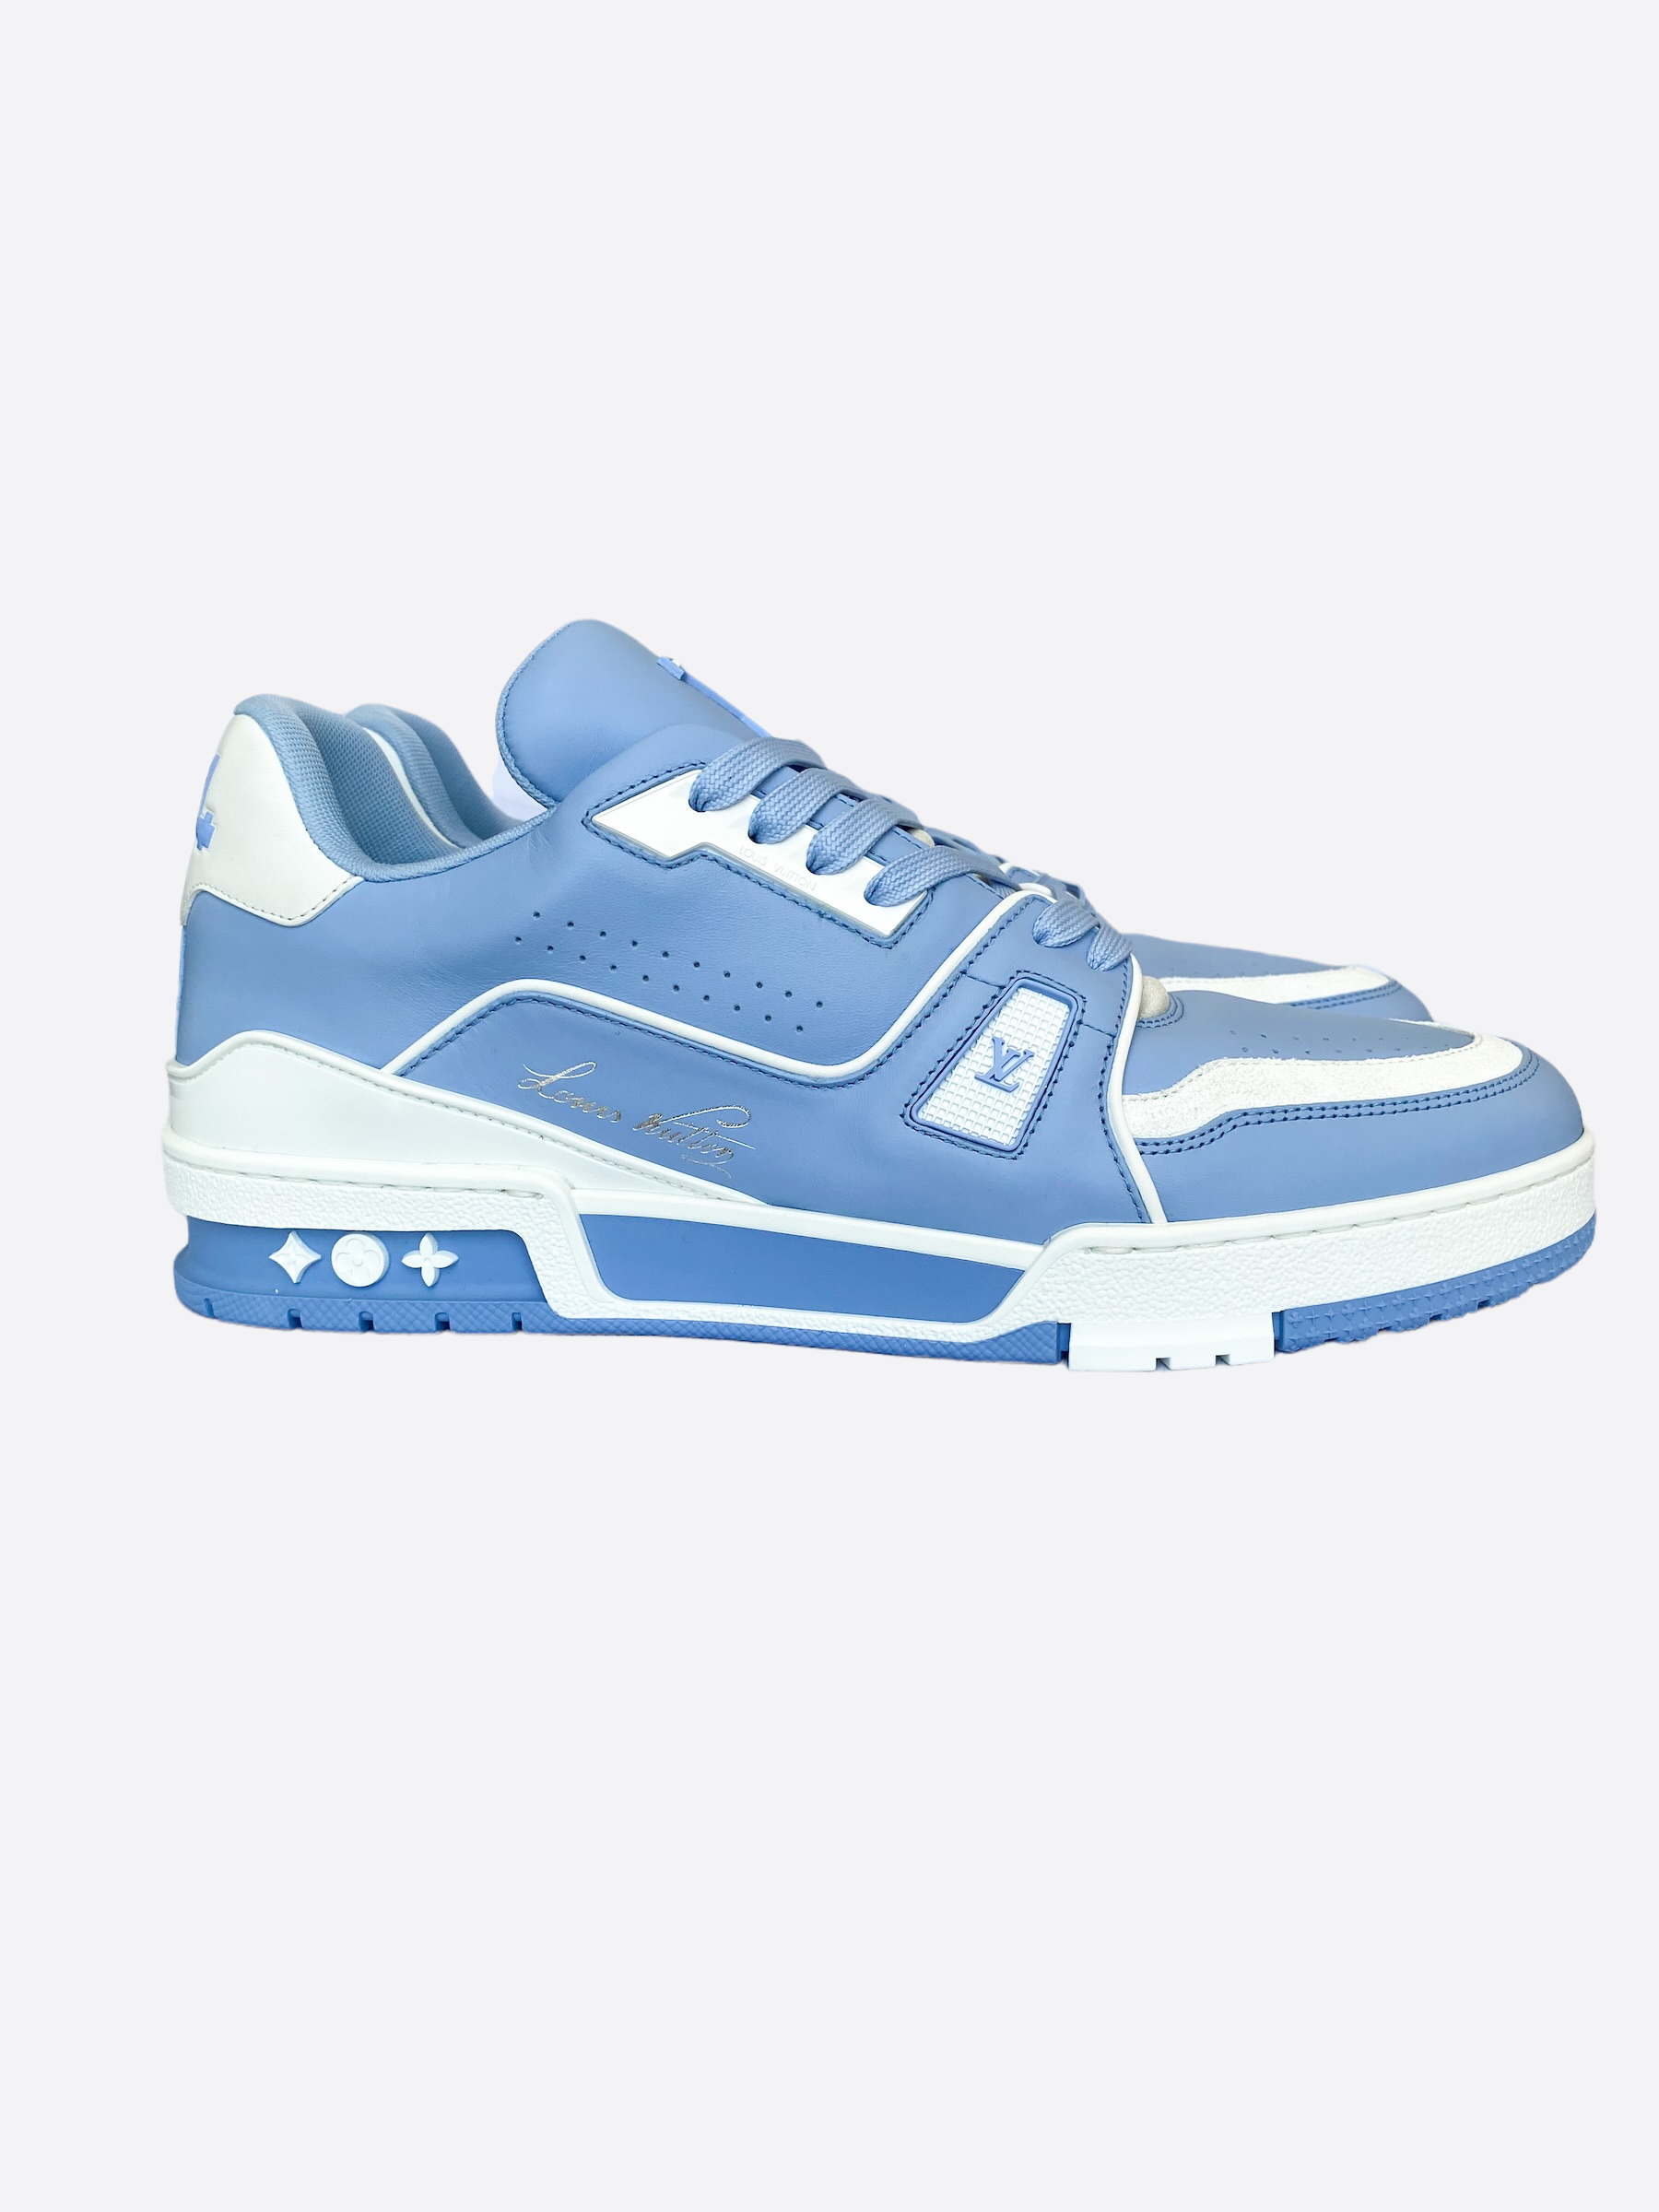 Louis Vuitton LV Trainer Sneaker Blue. Size 11.0